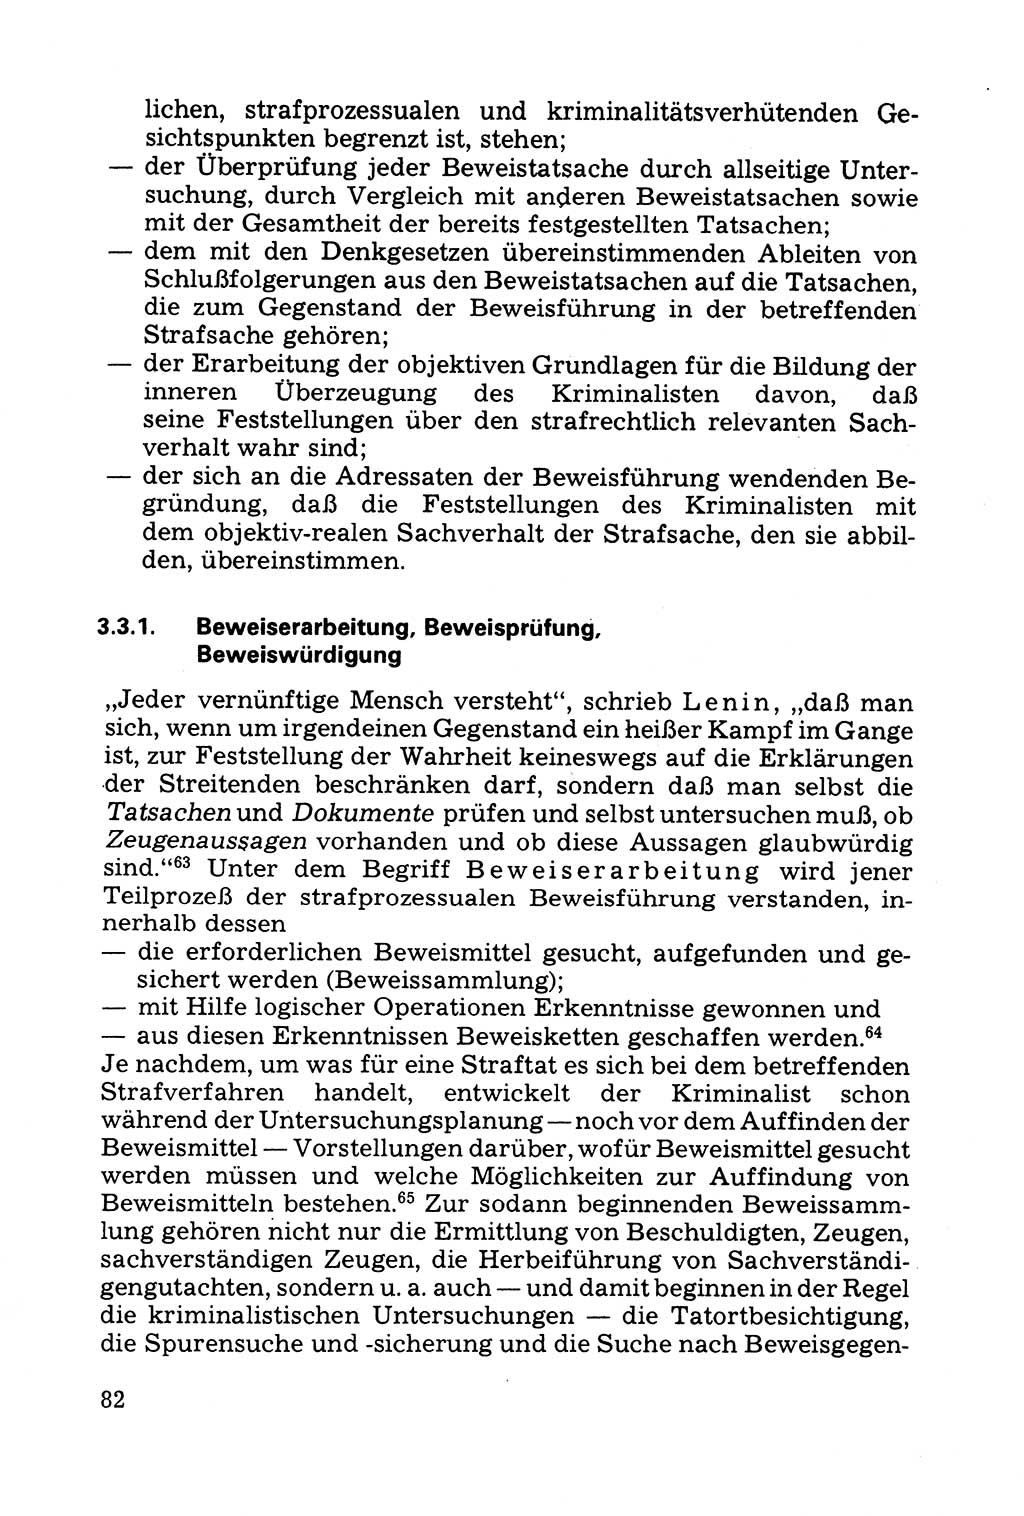 Grundfragen der Beweisführung im Ermittlungsverfahren [Deutsche Demokratische Republik (DDR)] 1980, Seite 82 (Bws.-Fhrg. EV DDR 1980, S. 82)